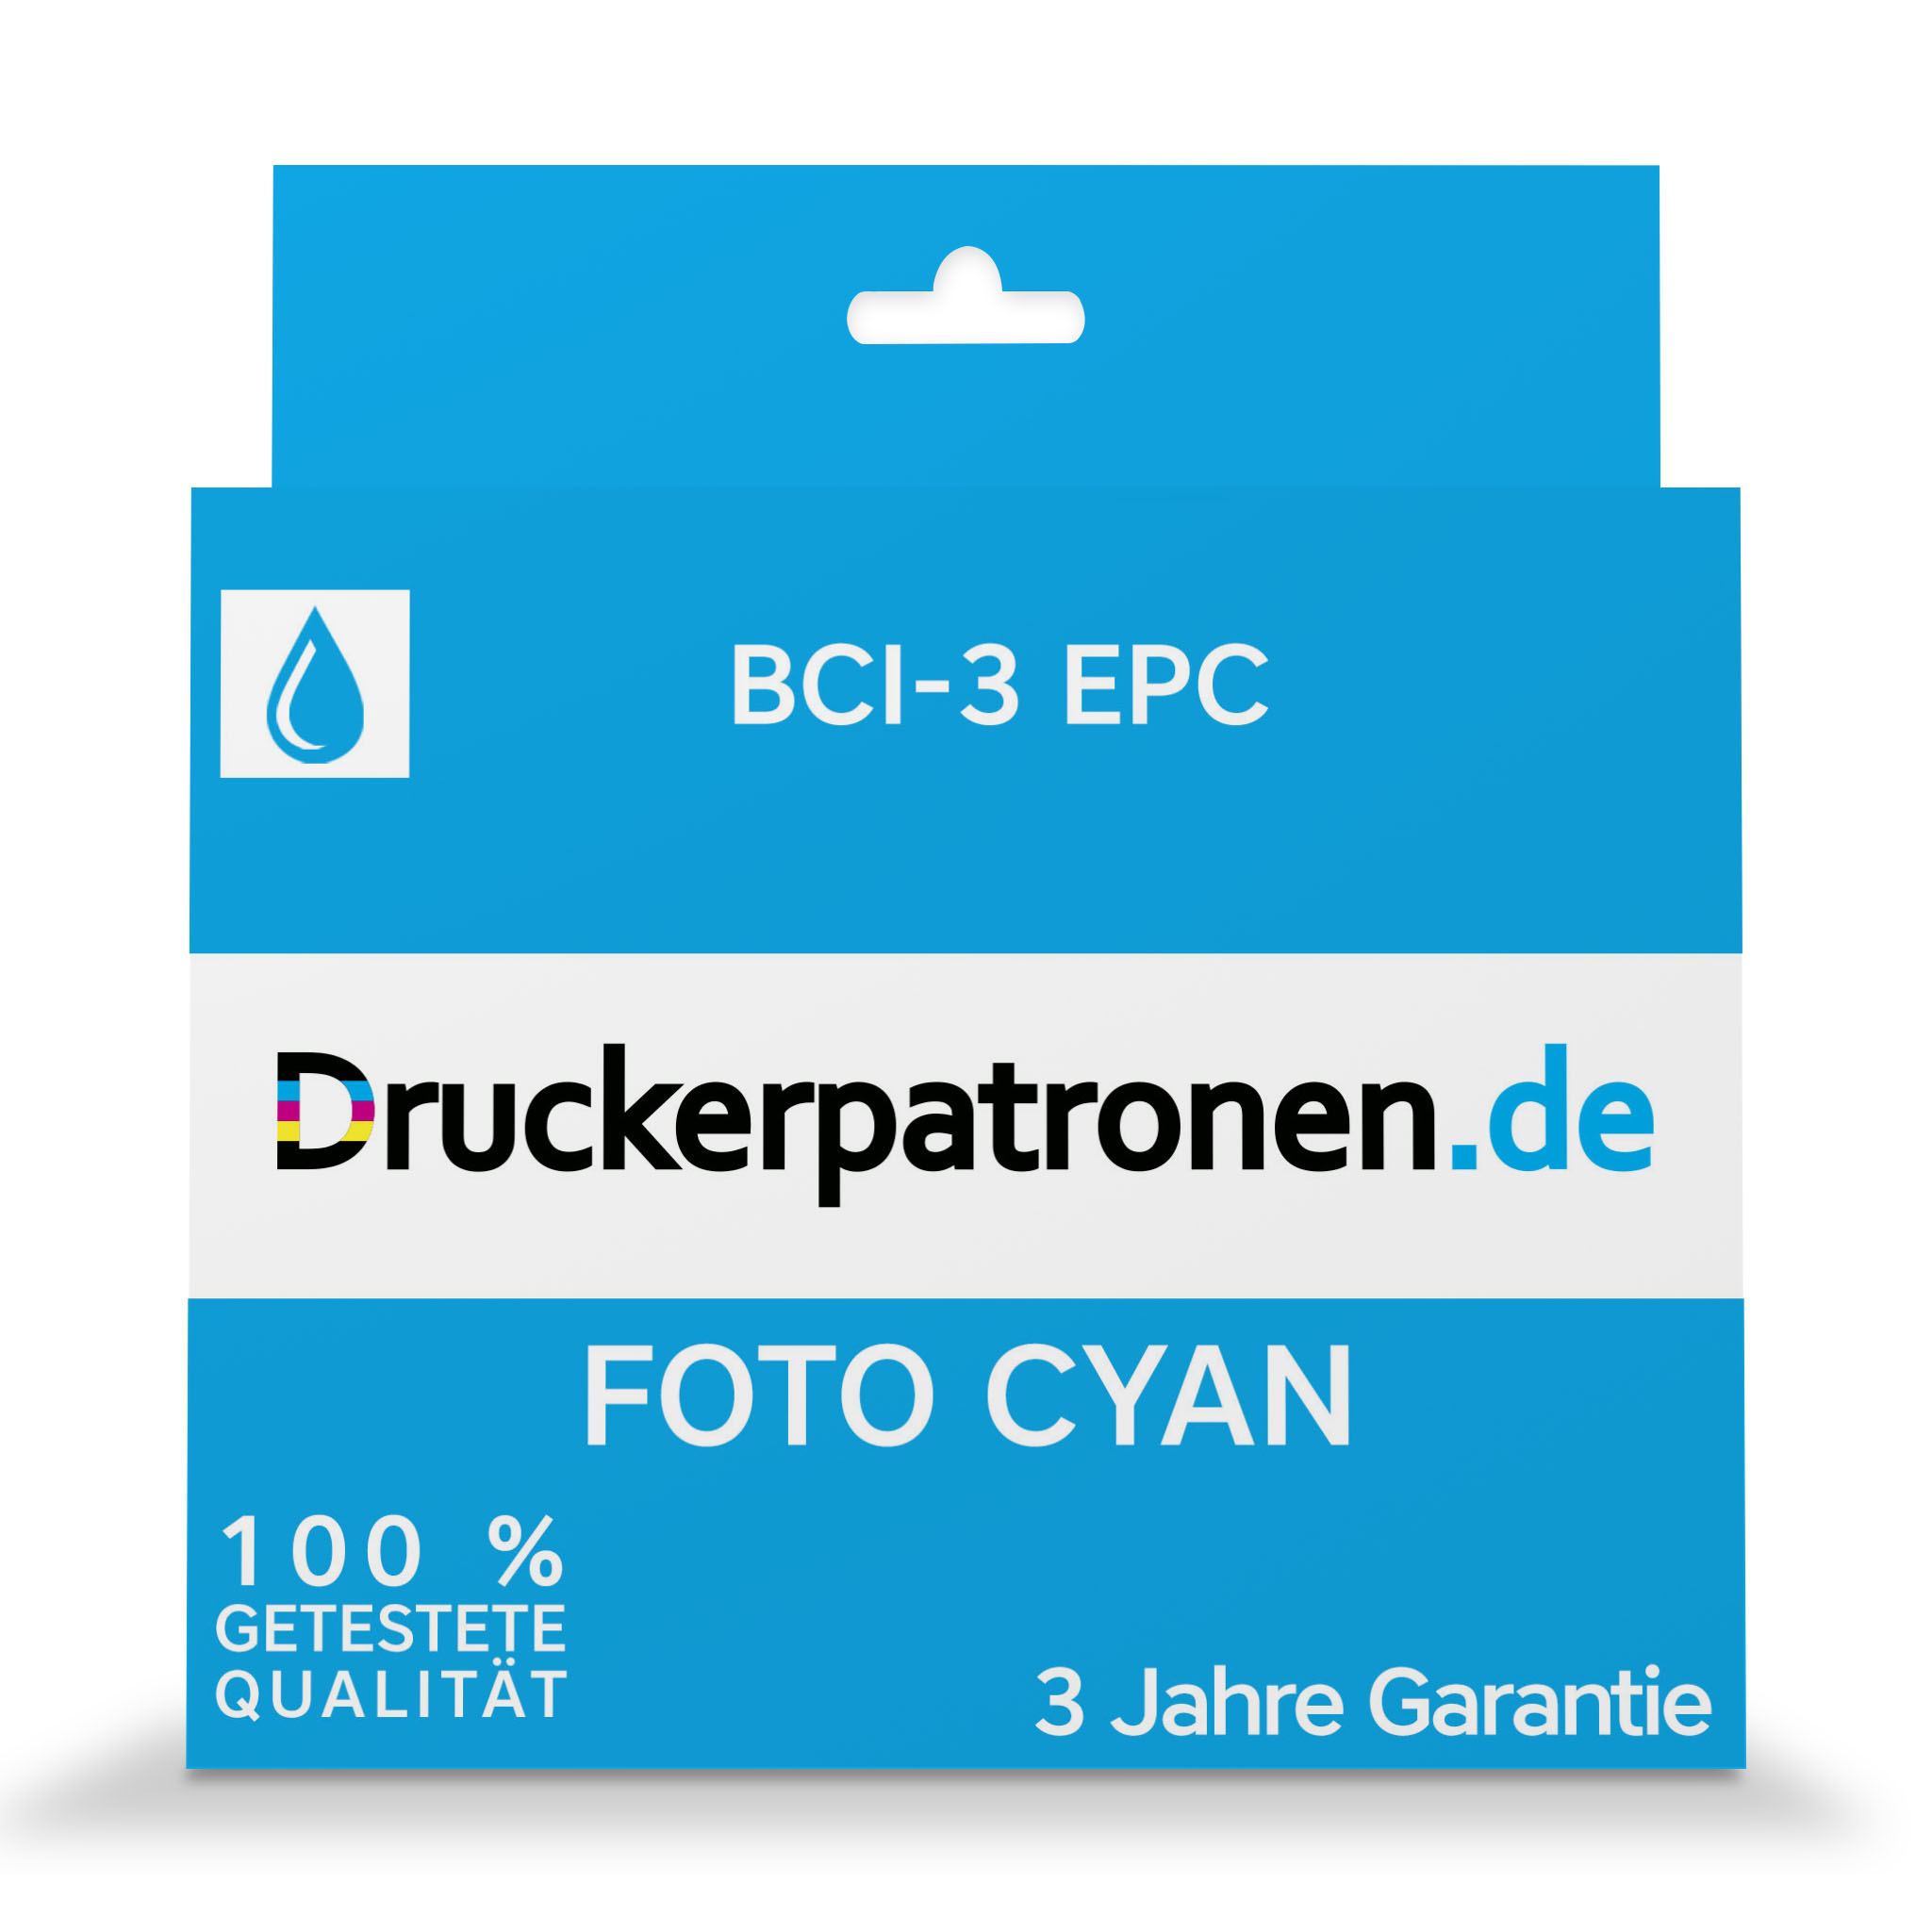 BCI-3 EPC